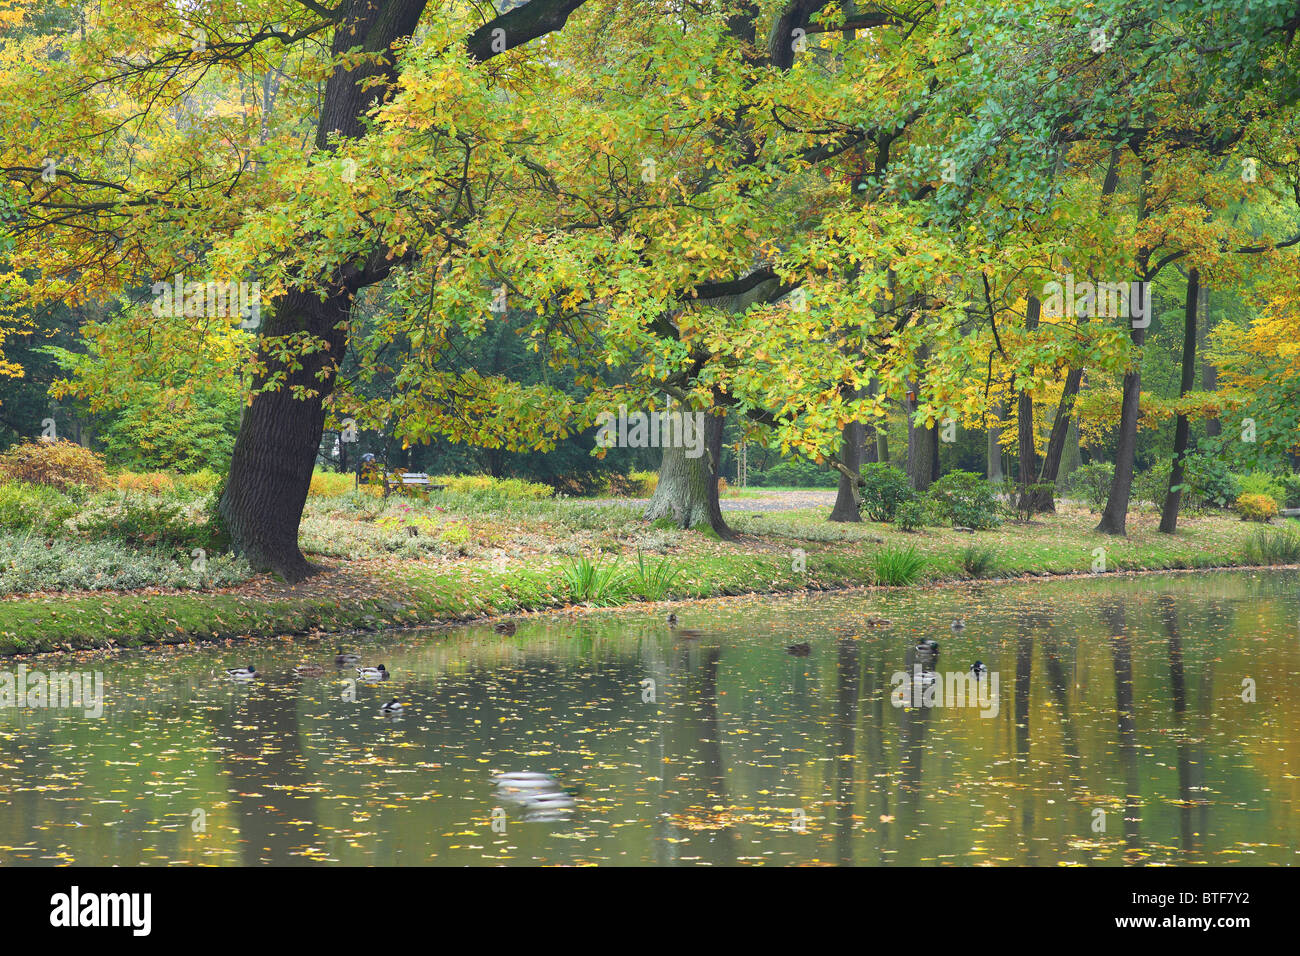 Tranquilla tranquilla acqua calma e in autunno i colori dell'autunno Foto Stock